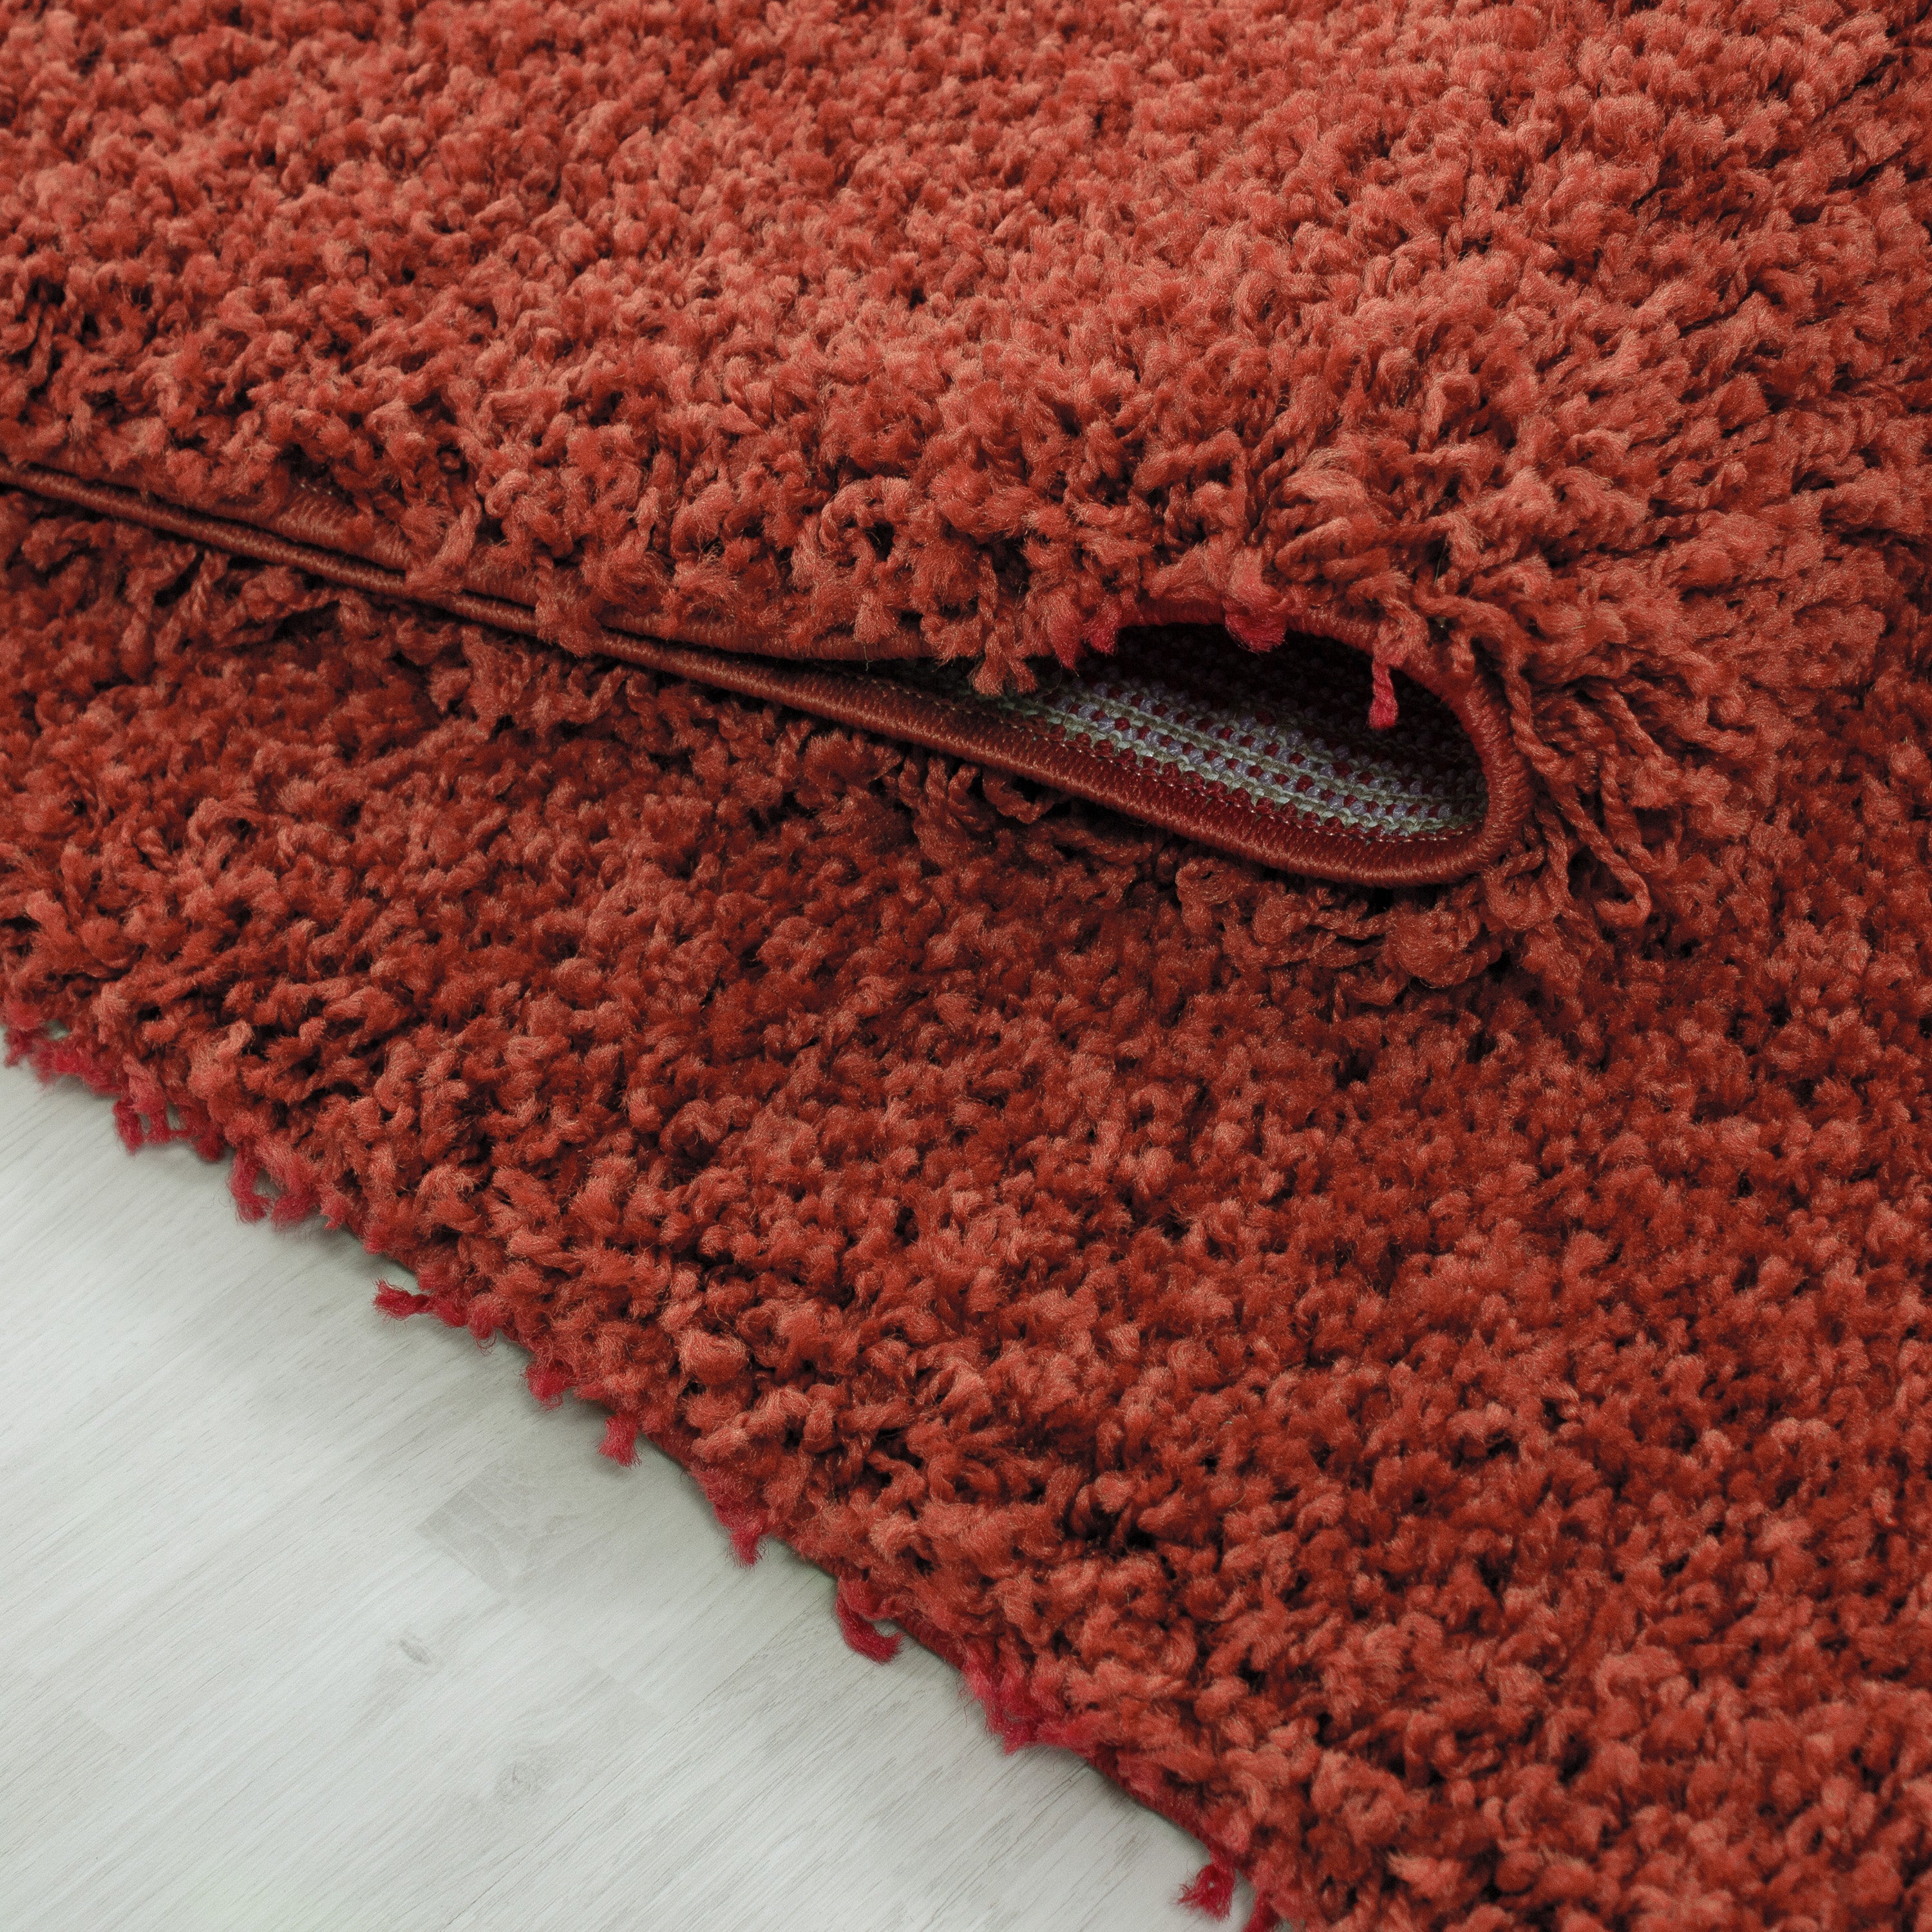 Hochflor Shaggy Teppich Rund verschiedene Farben und Größen Langflorteppich